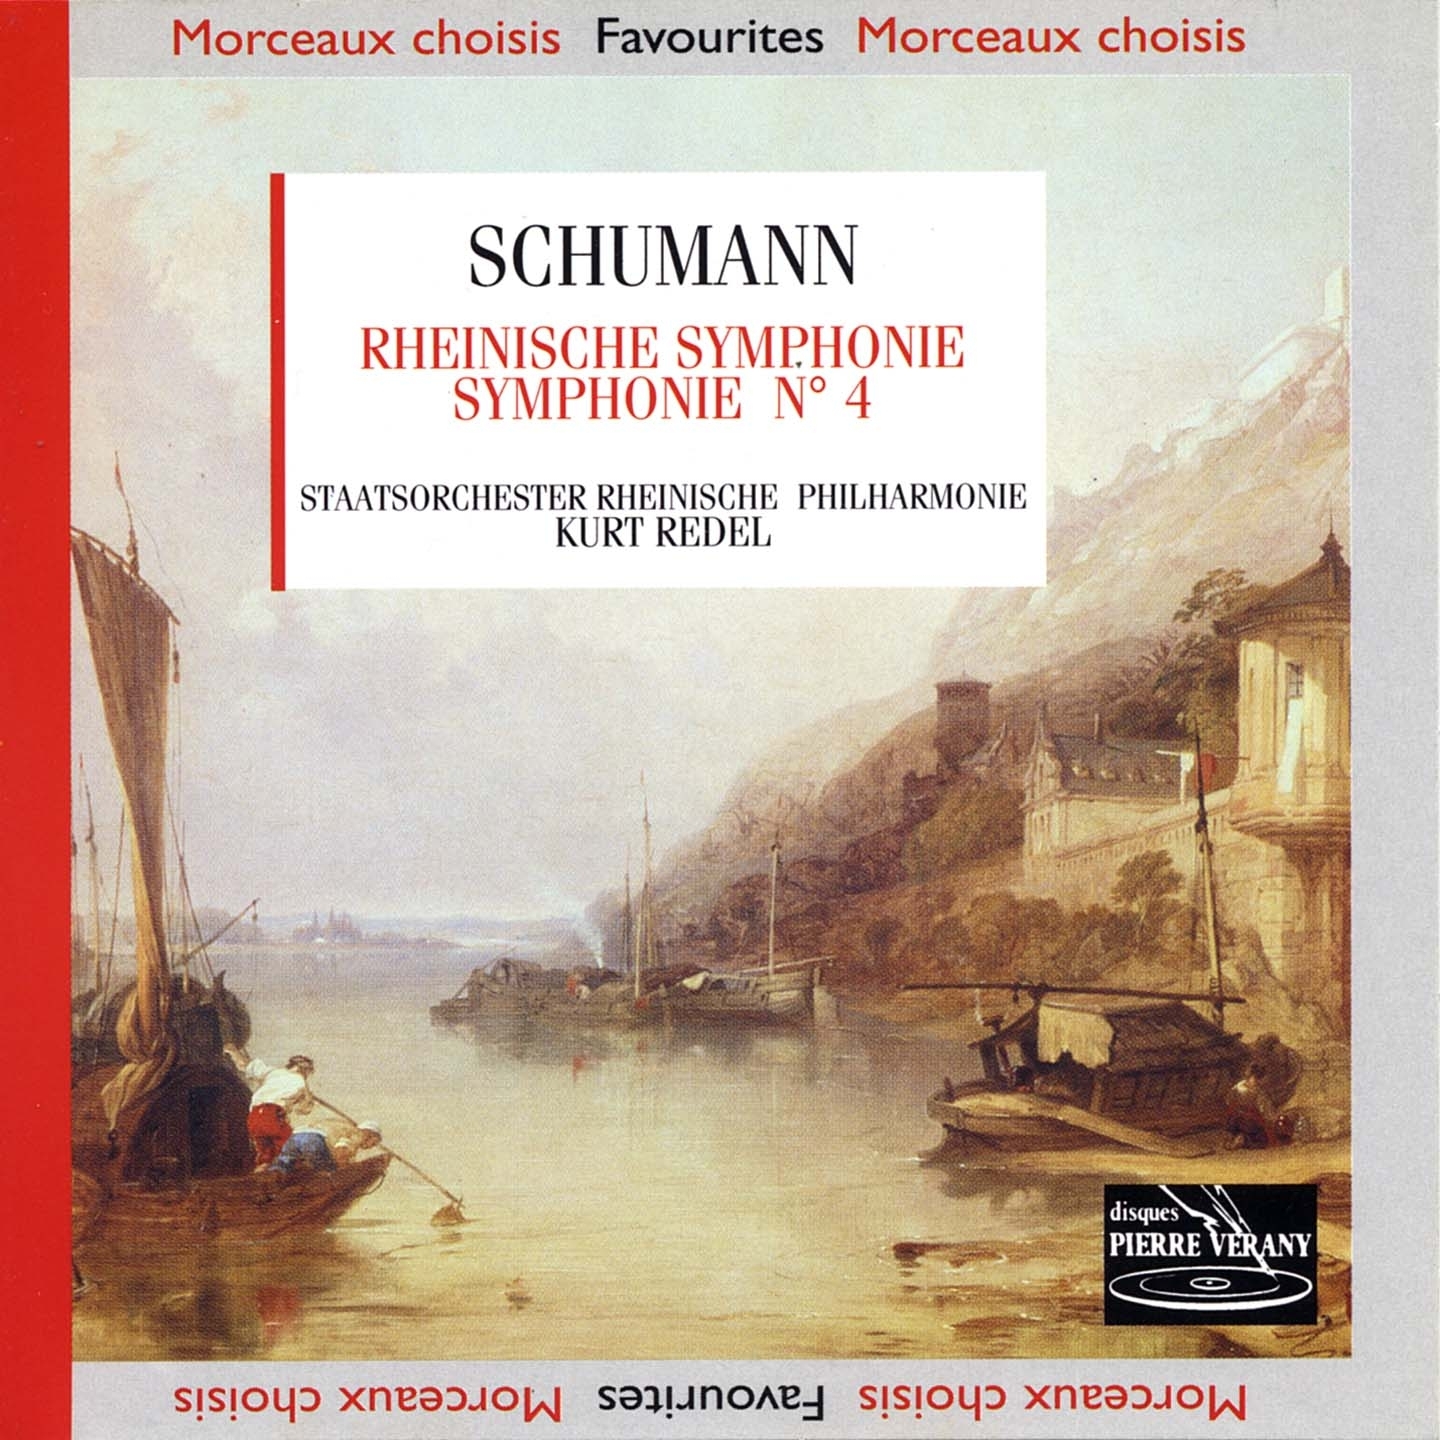 Schumann : Rheinische symphonie symphonie n 4